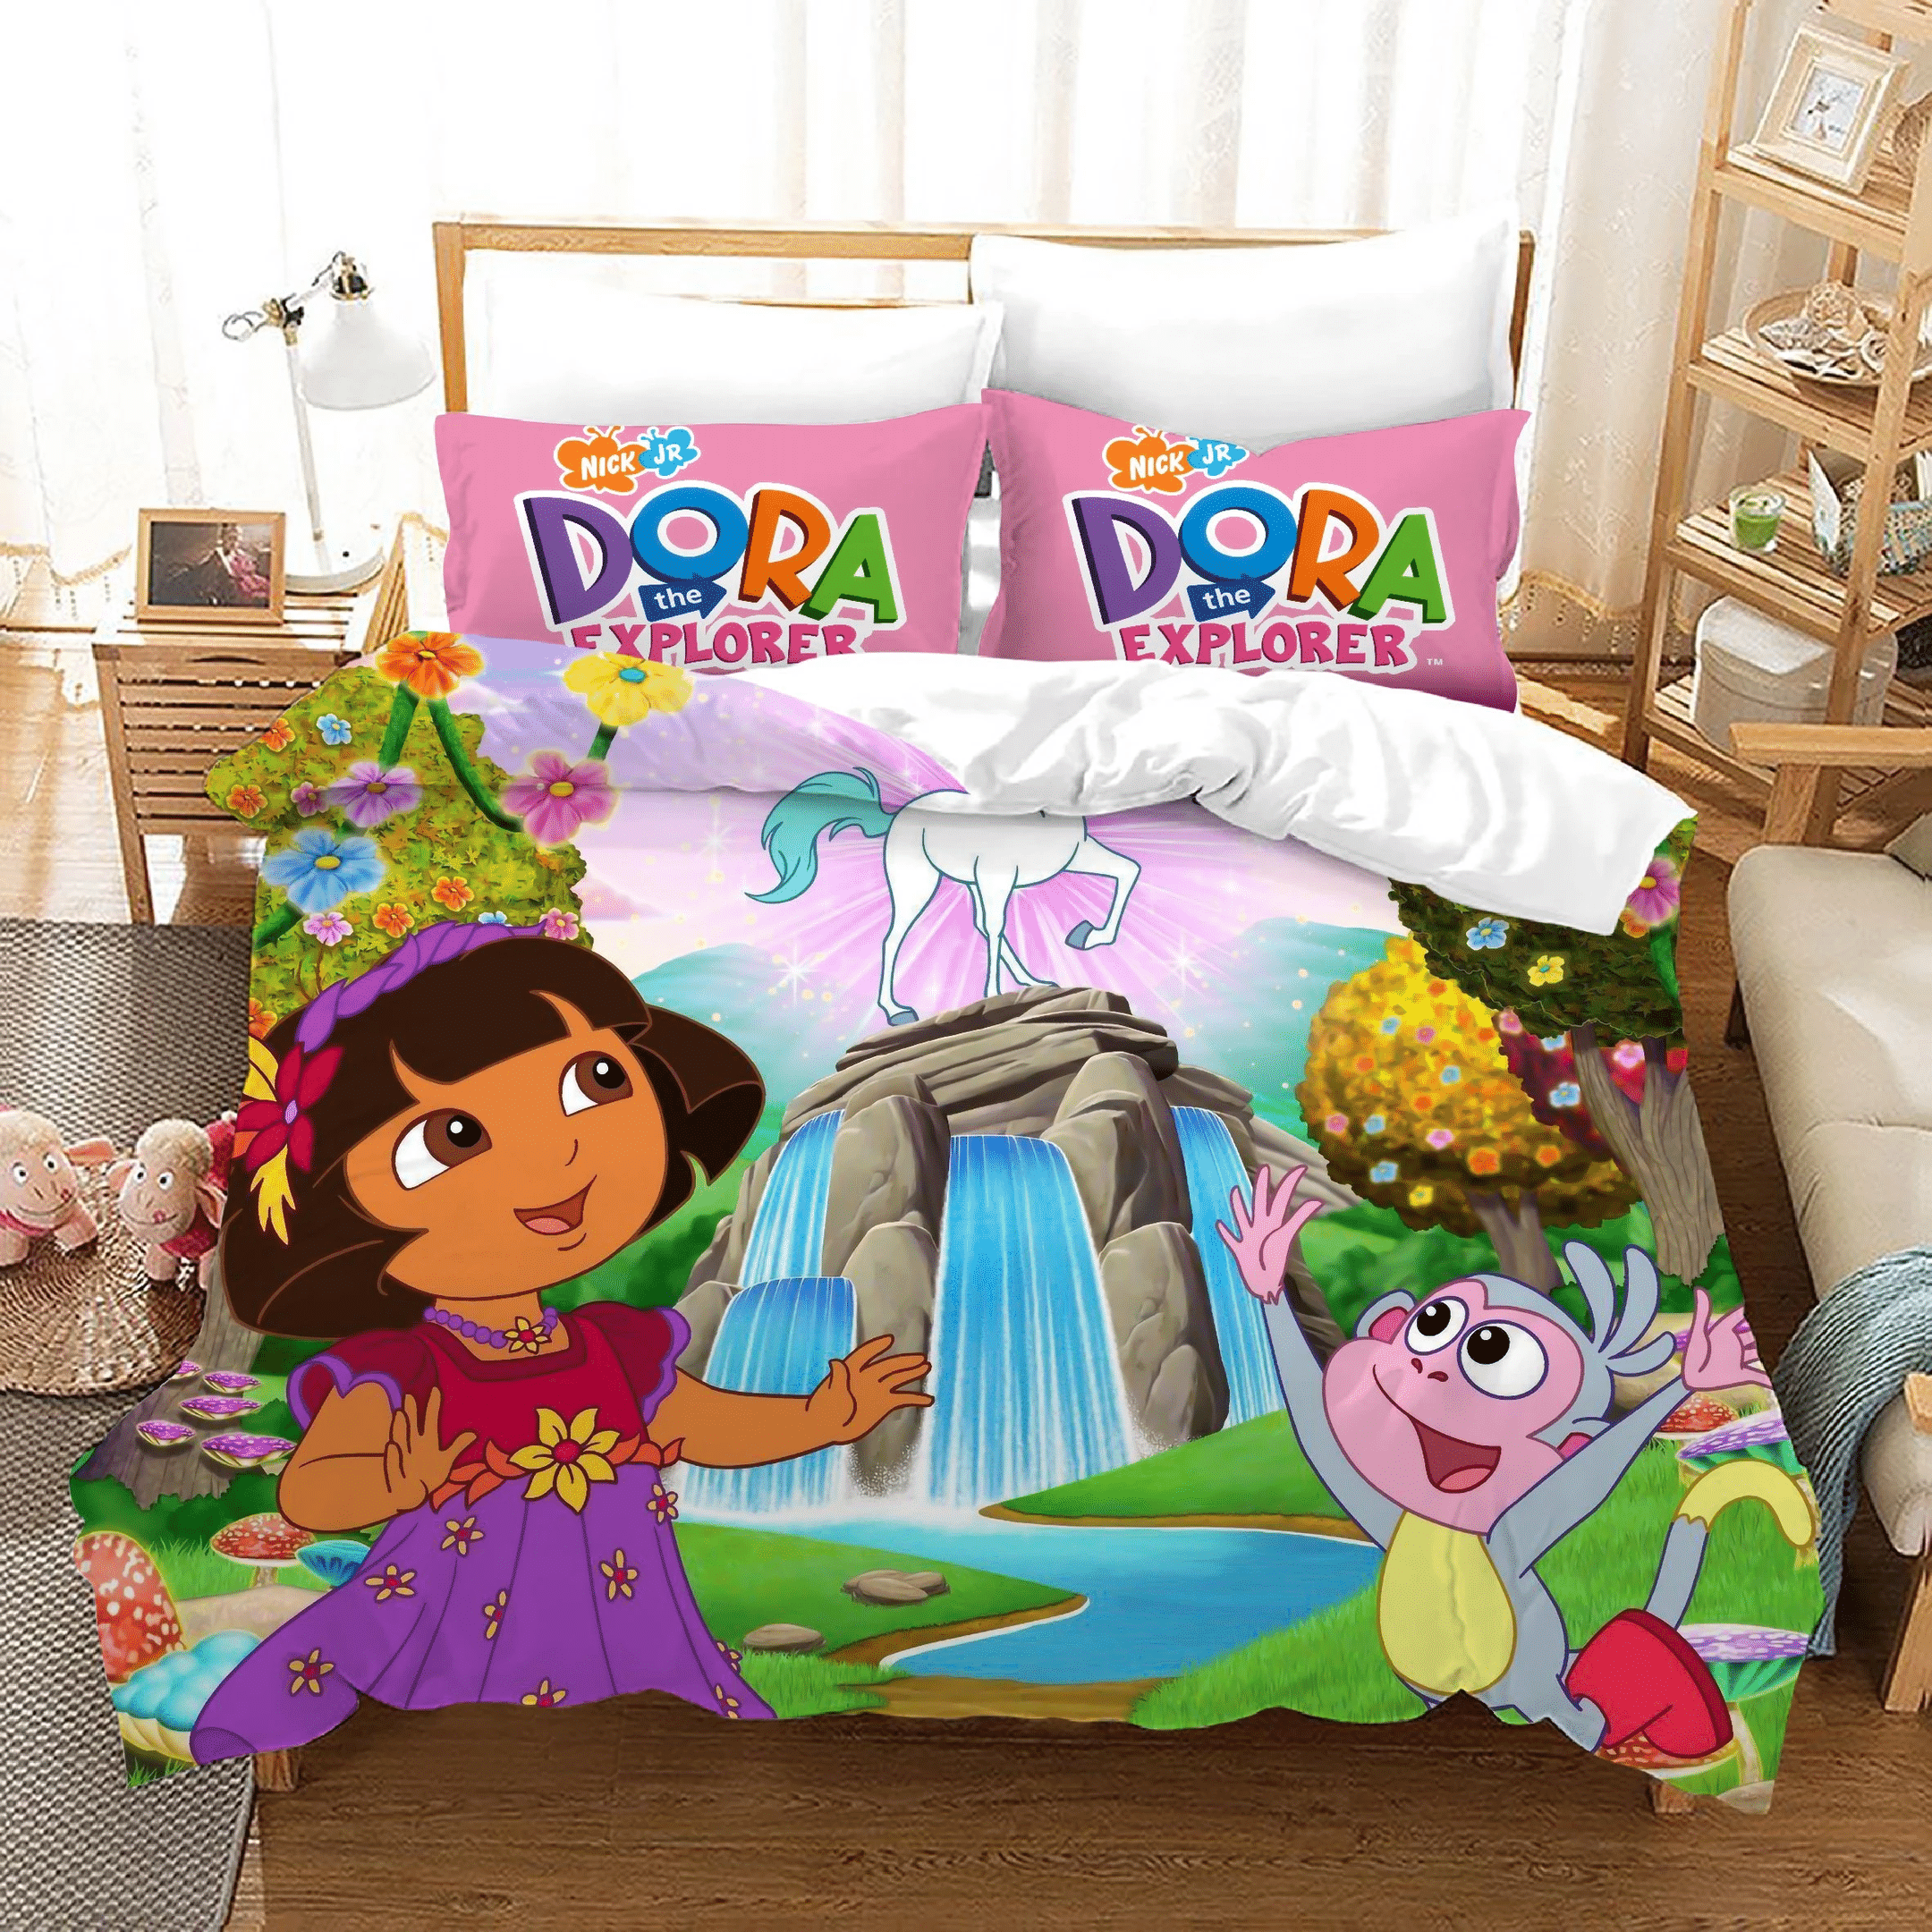 Dora The Explorer 2 Duvet Cover Quilt Cover Pillowcase Bedding